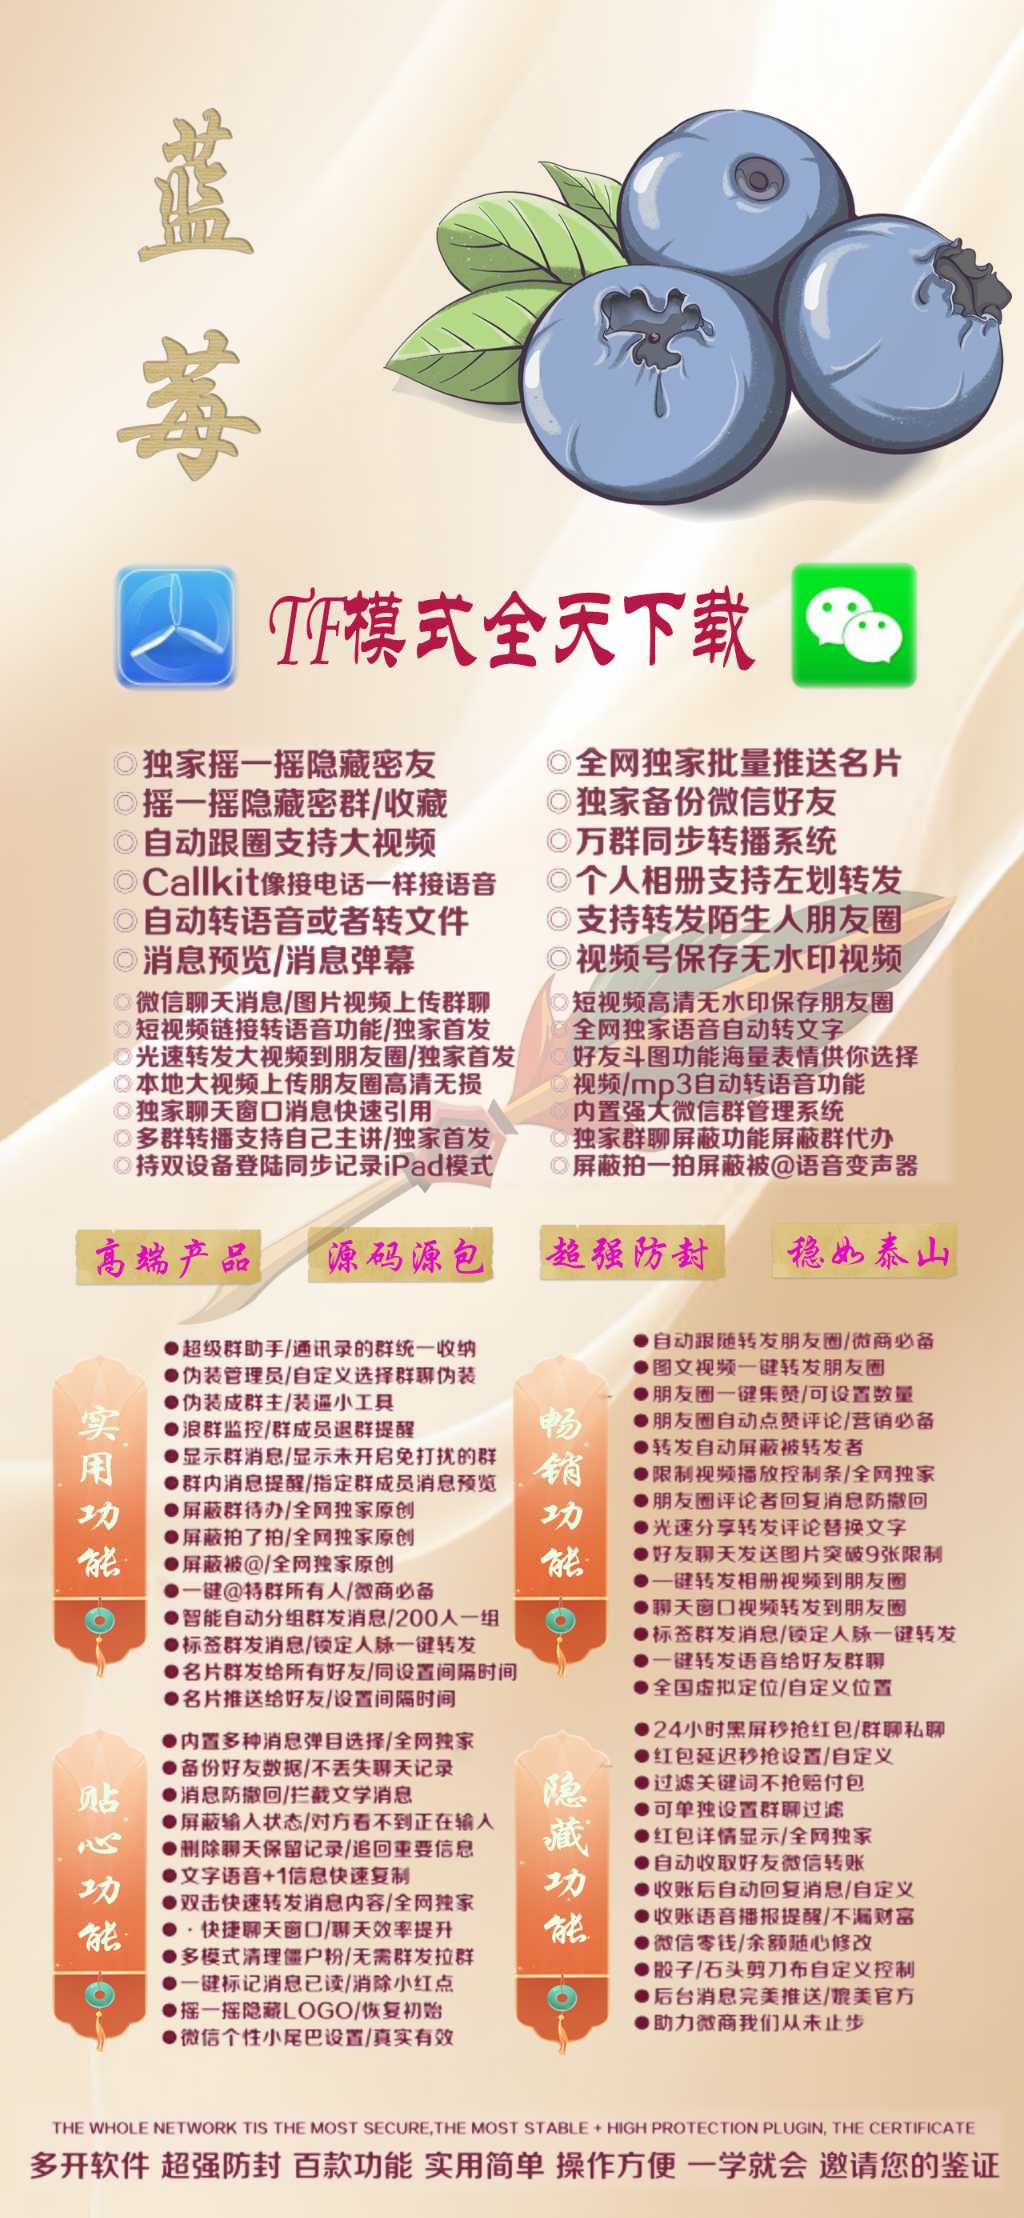 苹果蓝莓官网授权码微信多开_徐福记多开分身出卡码商场_